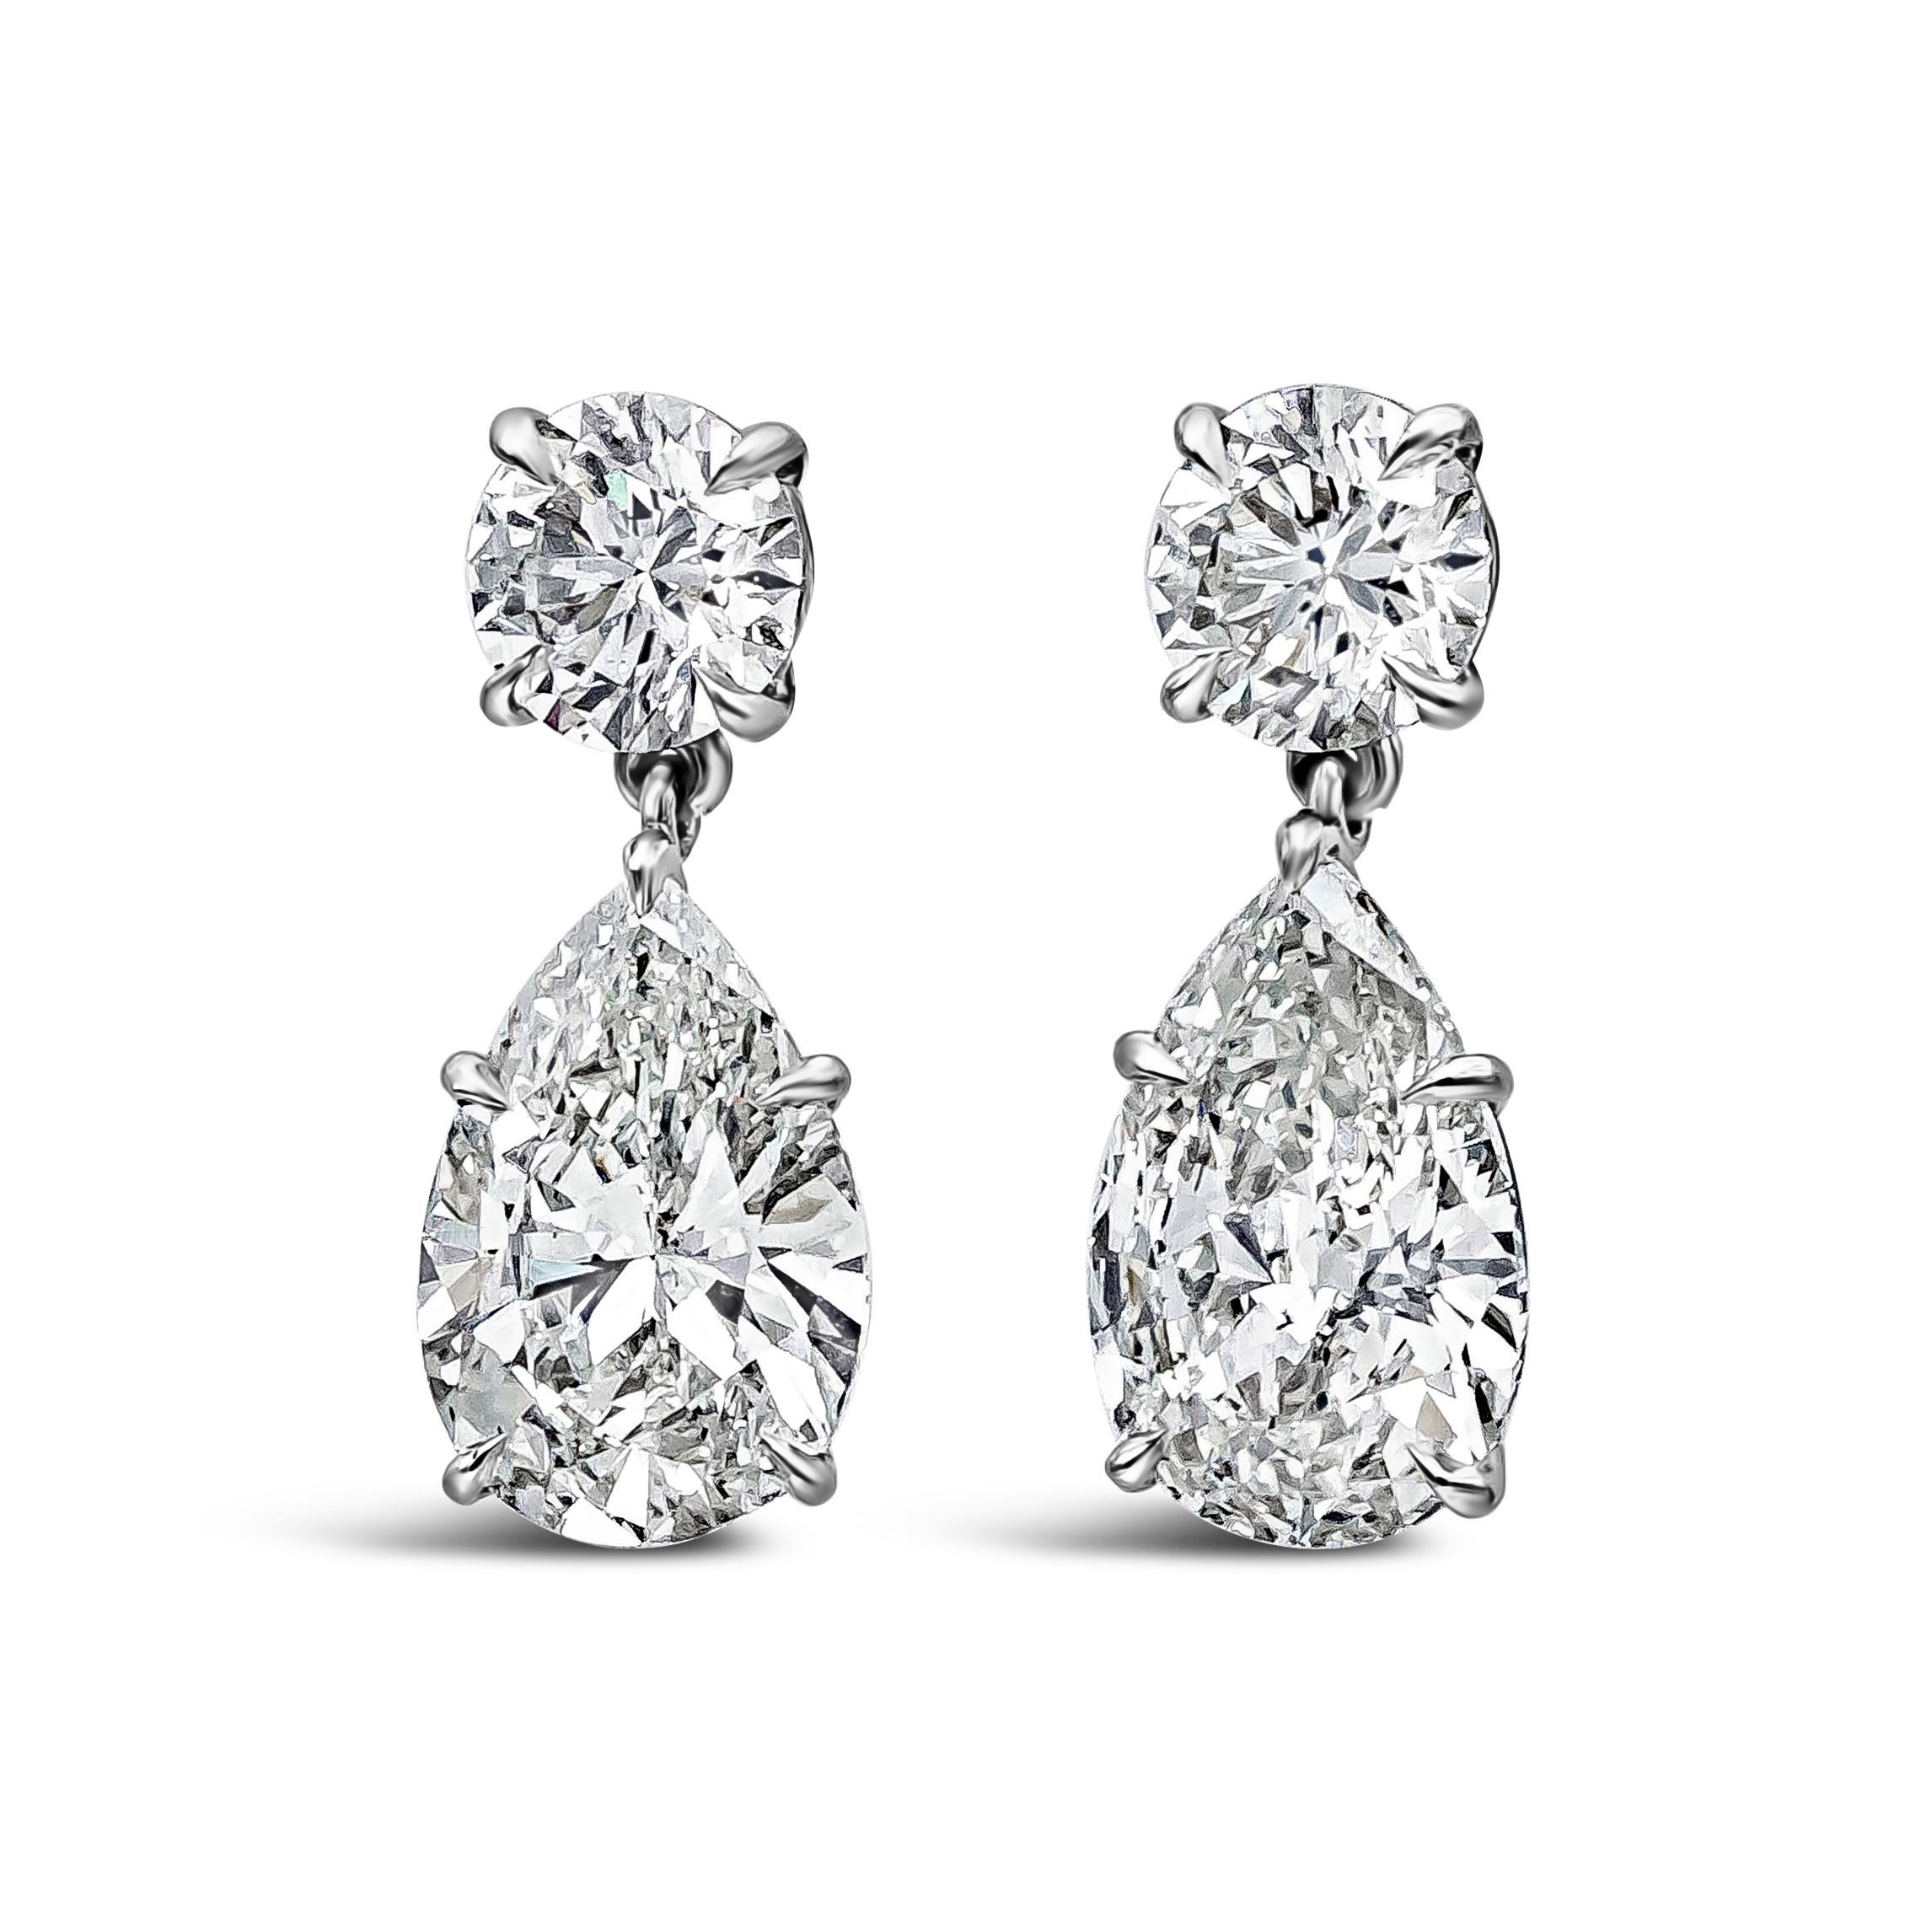 Une paire de boucles d'oreilles pendantes de grande classe avec un diamant poire certifié GIA suspendu à un diamant rond brillant certifié GIA. Les diamants de forme poire pèsent 4,02 carats au total, de couleur G-H et de pureté SI1. Les diamants